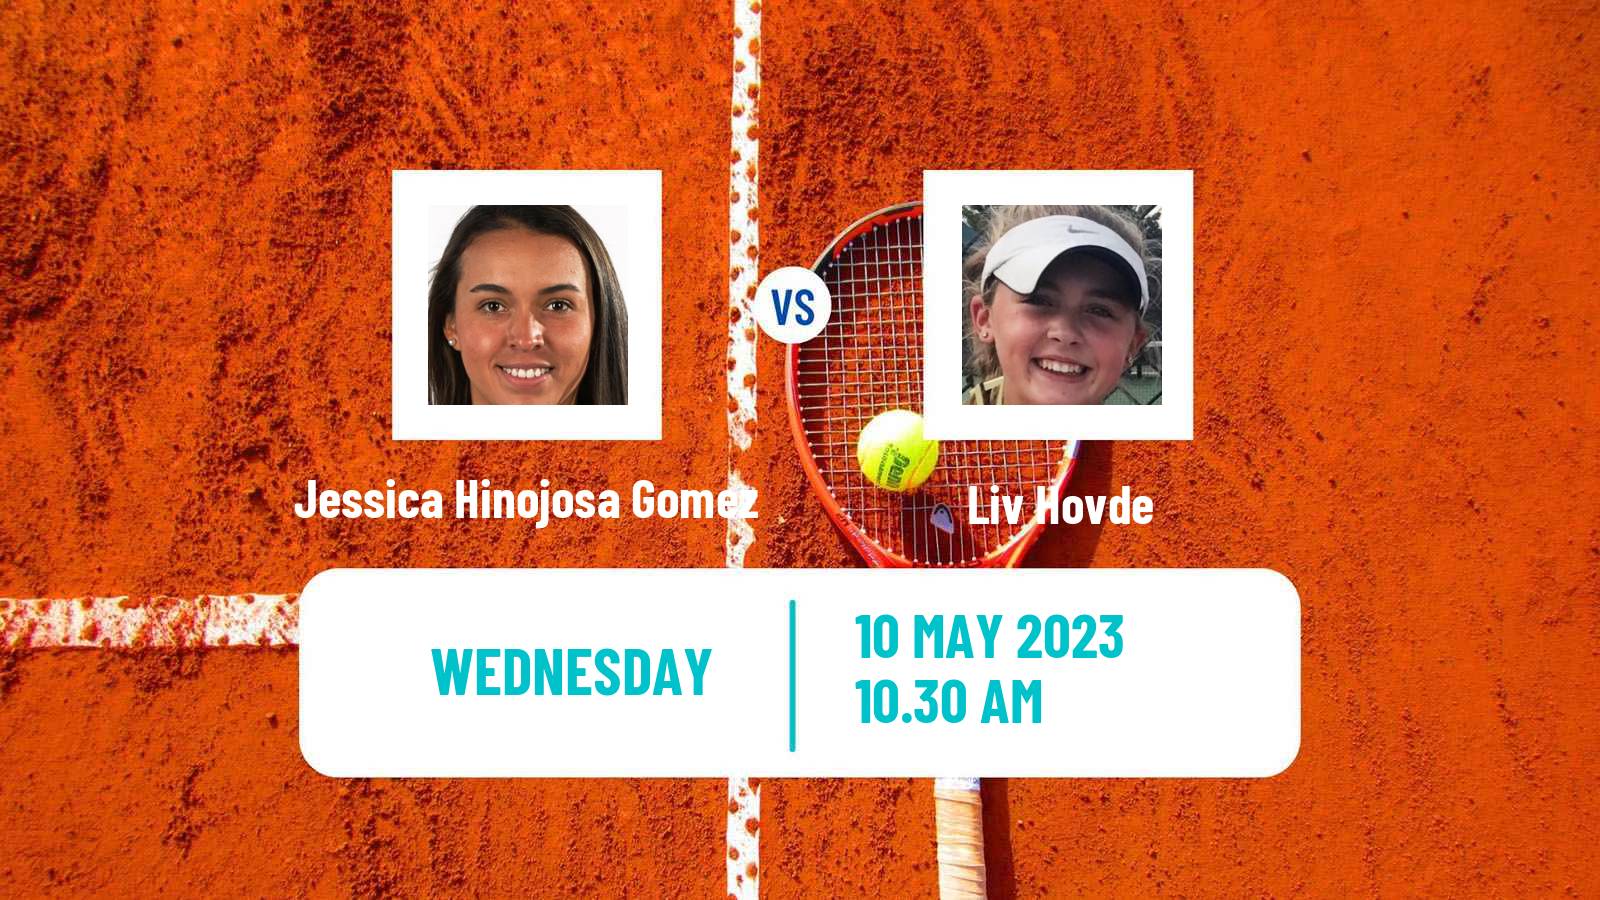 Tennis ITF Tournaments Jessica Hinojosa Gomez - Liv Hovde